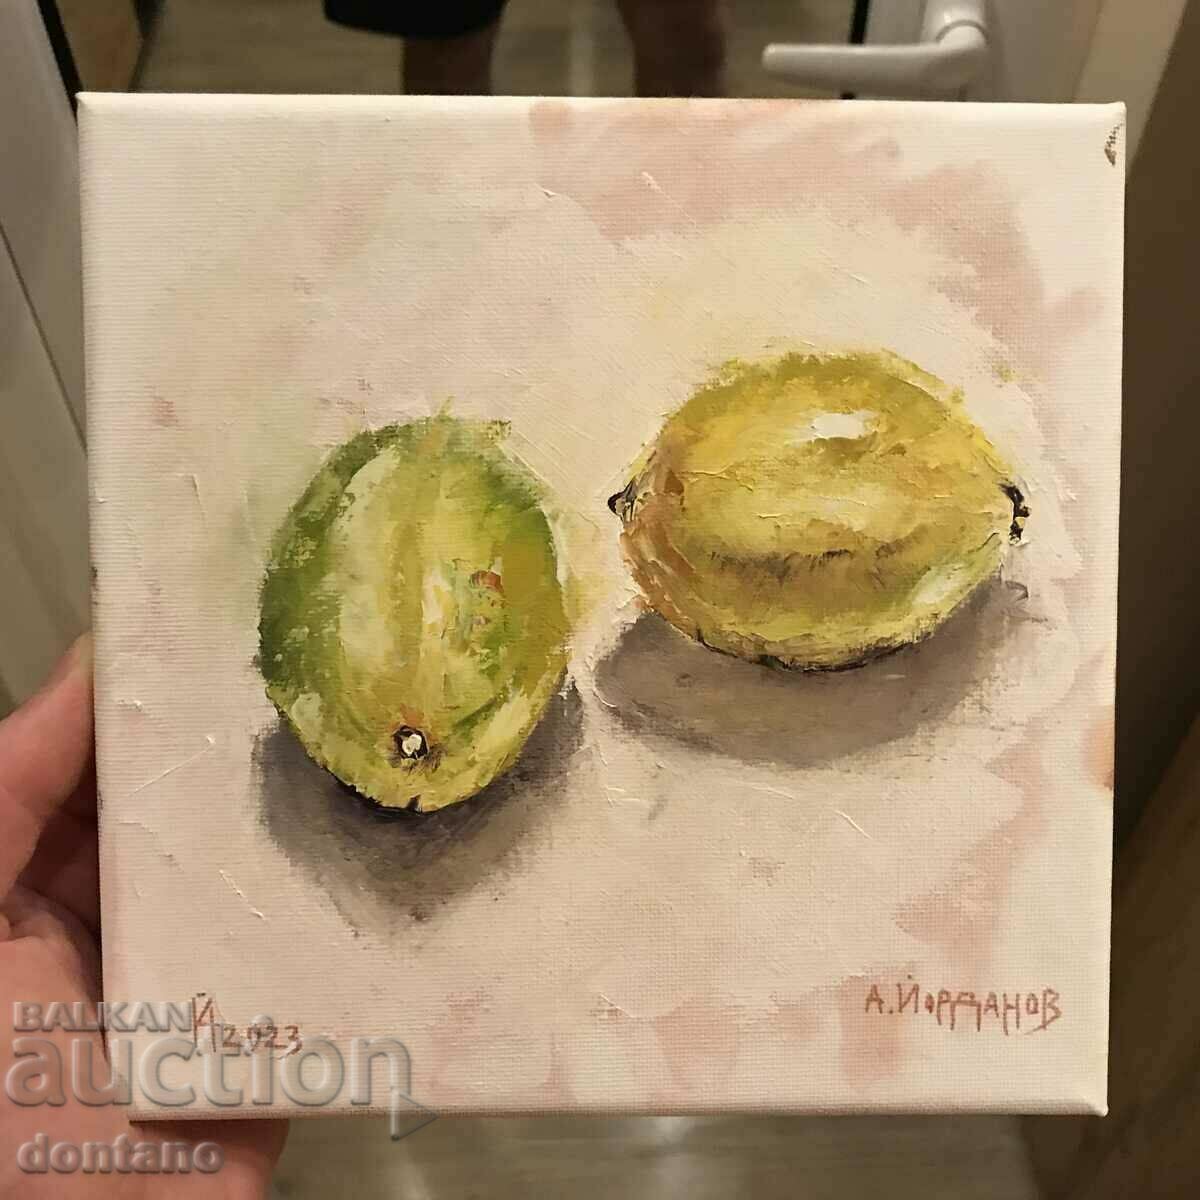 Oil painting - Still life - Two lemons - 20/20cm